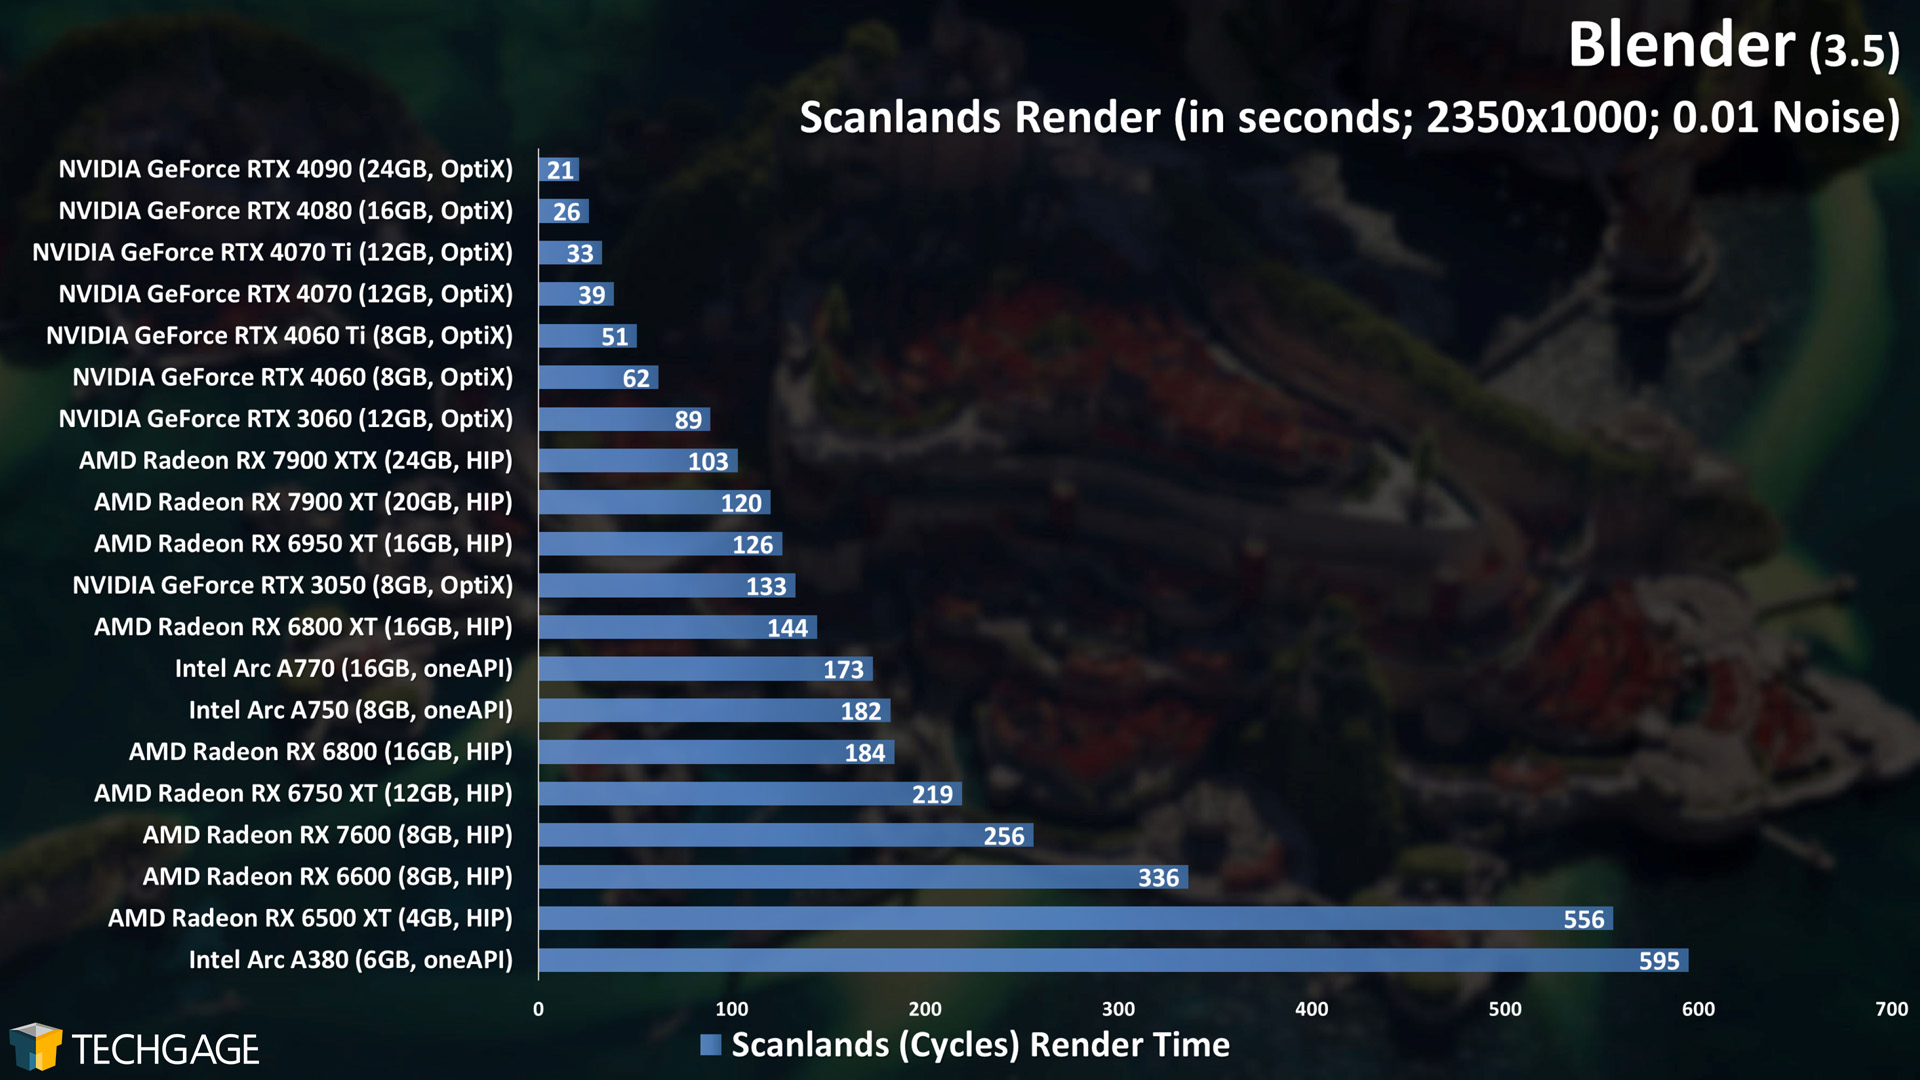 Blender - Cycles GPU Rendering Performance (Scanlands)